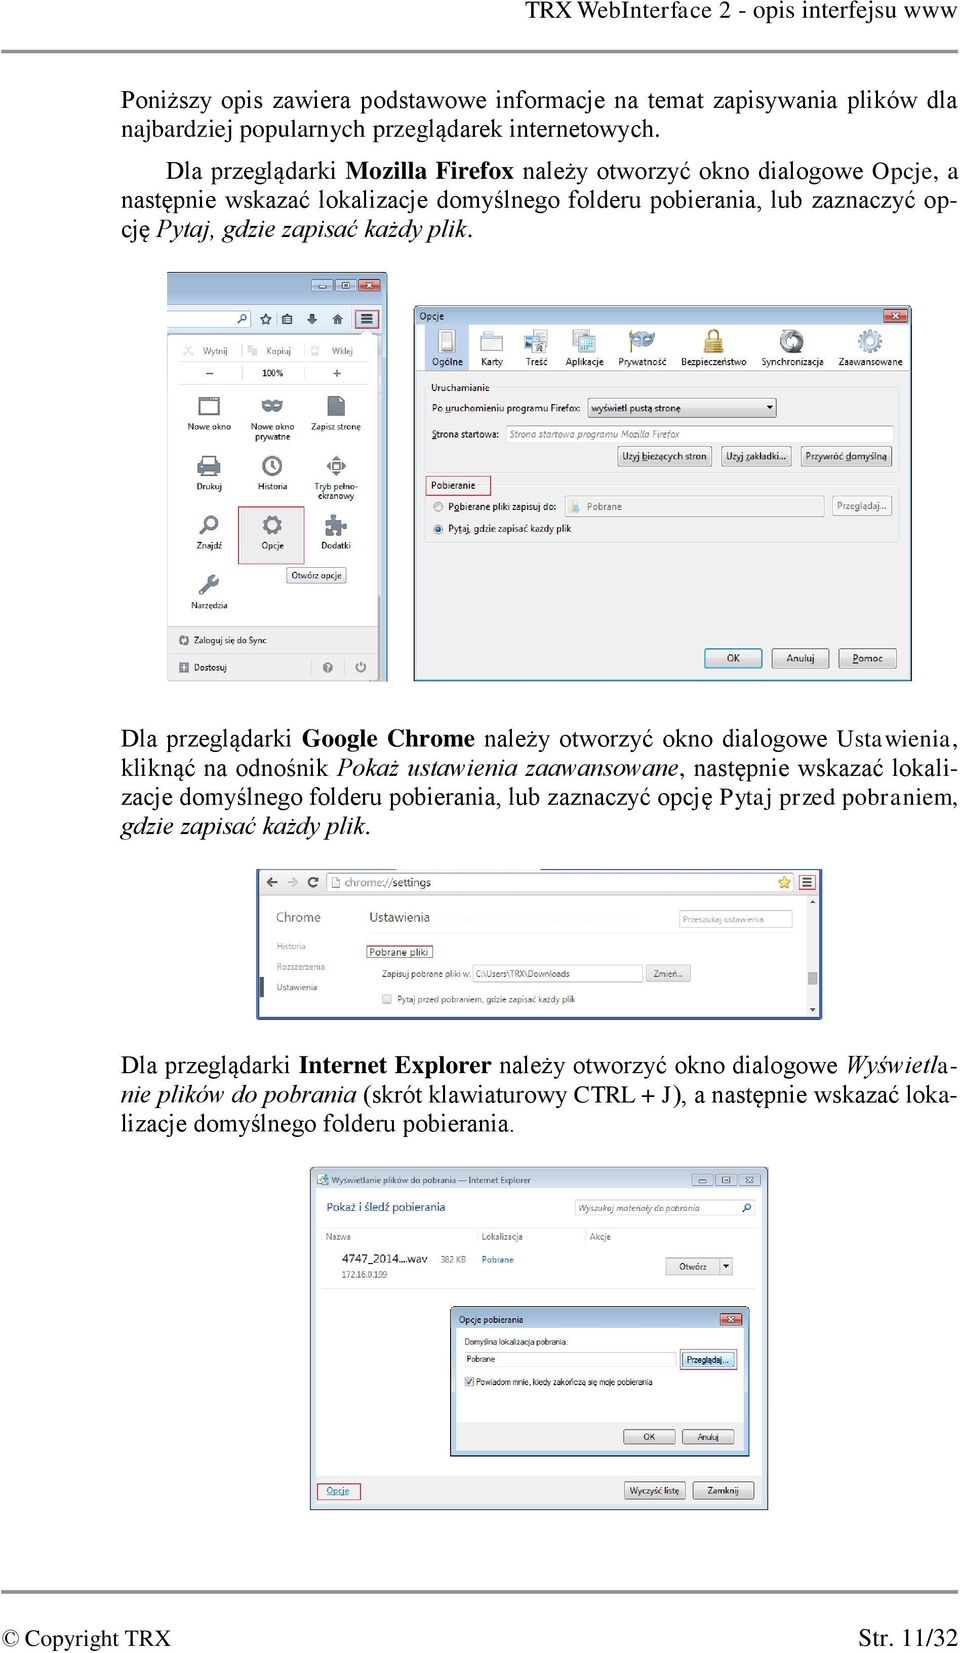 Dla przeglądarki Google Chrome należy otworzyć okno dialogowe Ustawienia, kliknąć na odnośnik Pokaż ustawienia zaawansowane, następnie wskazać lokalizacje domyślnego folderu pobierania, lub